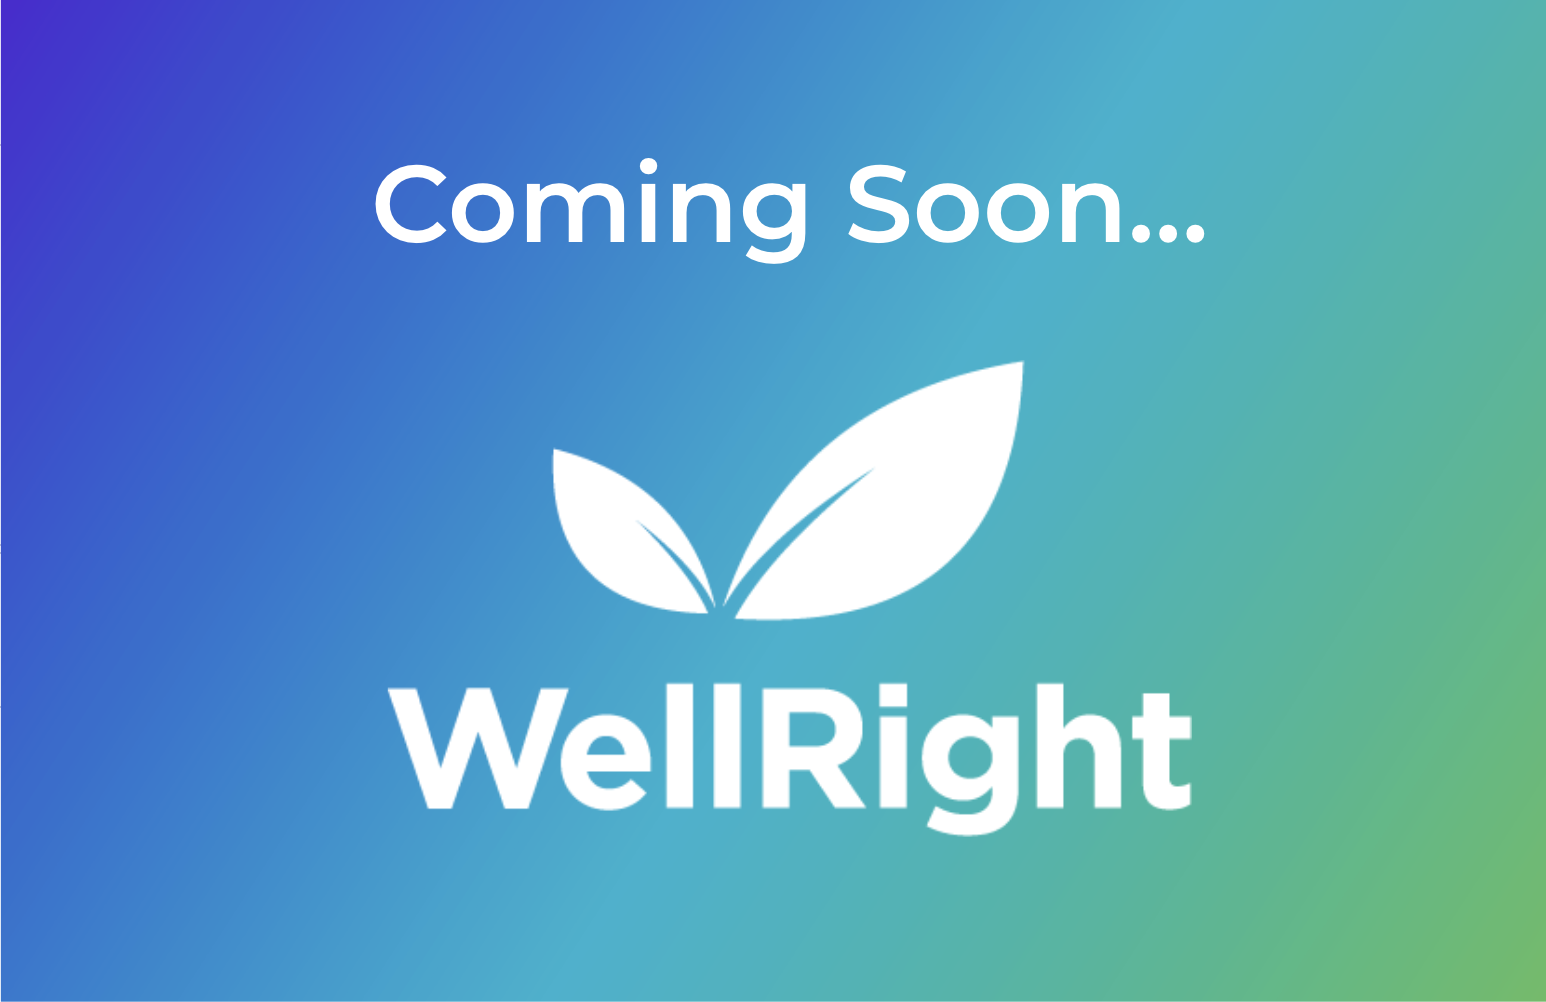 WellRight - vendor materials